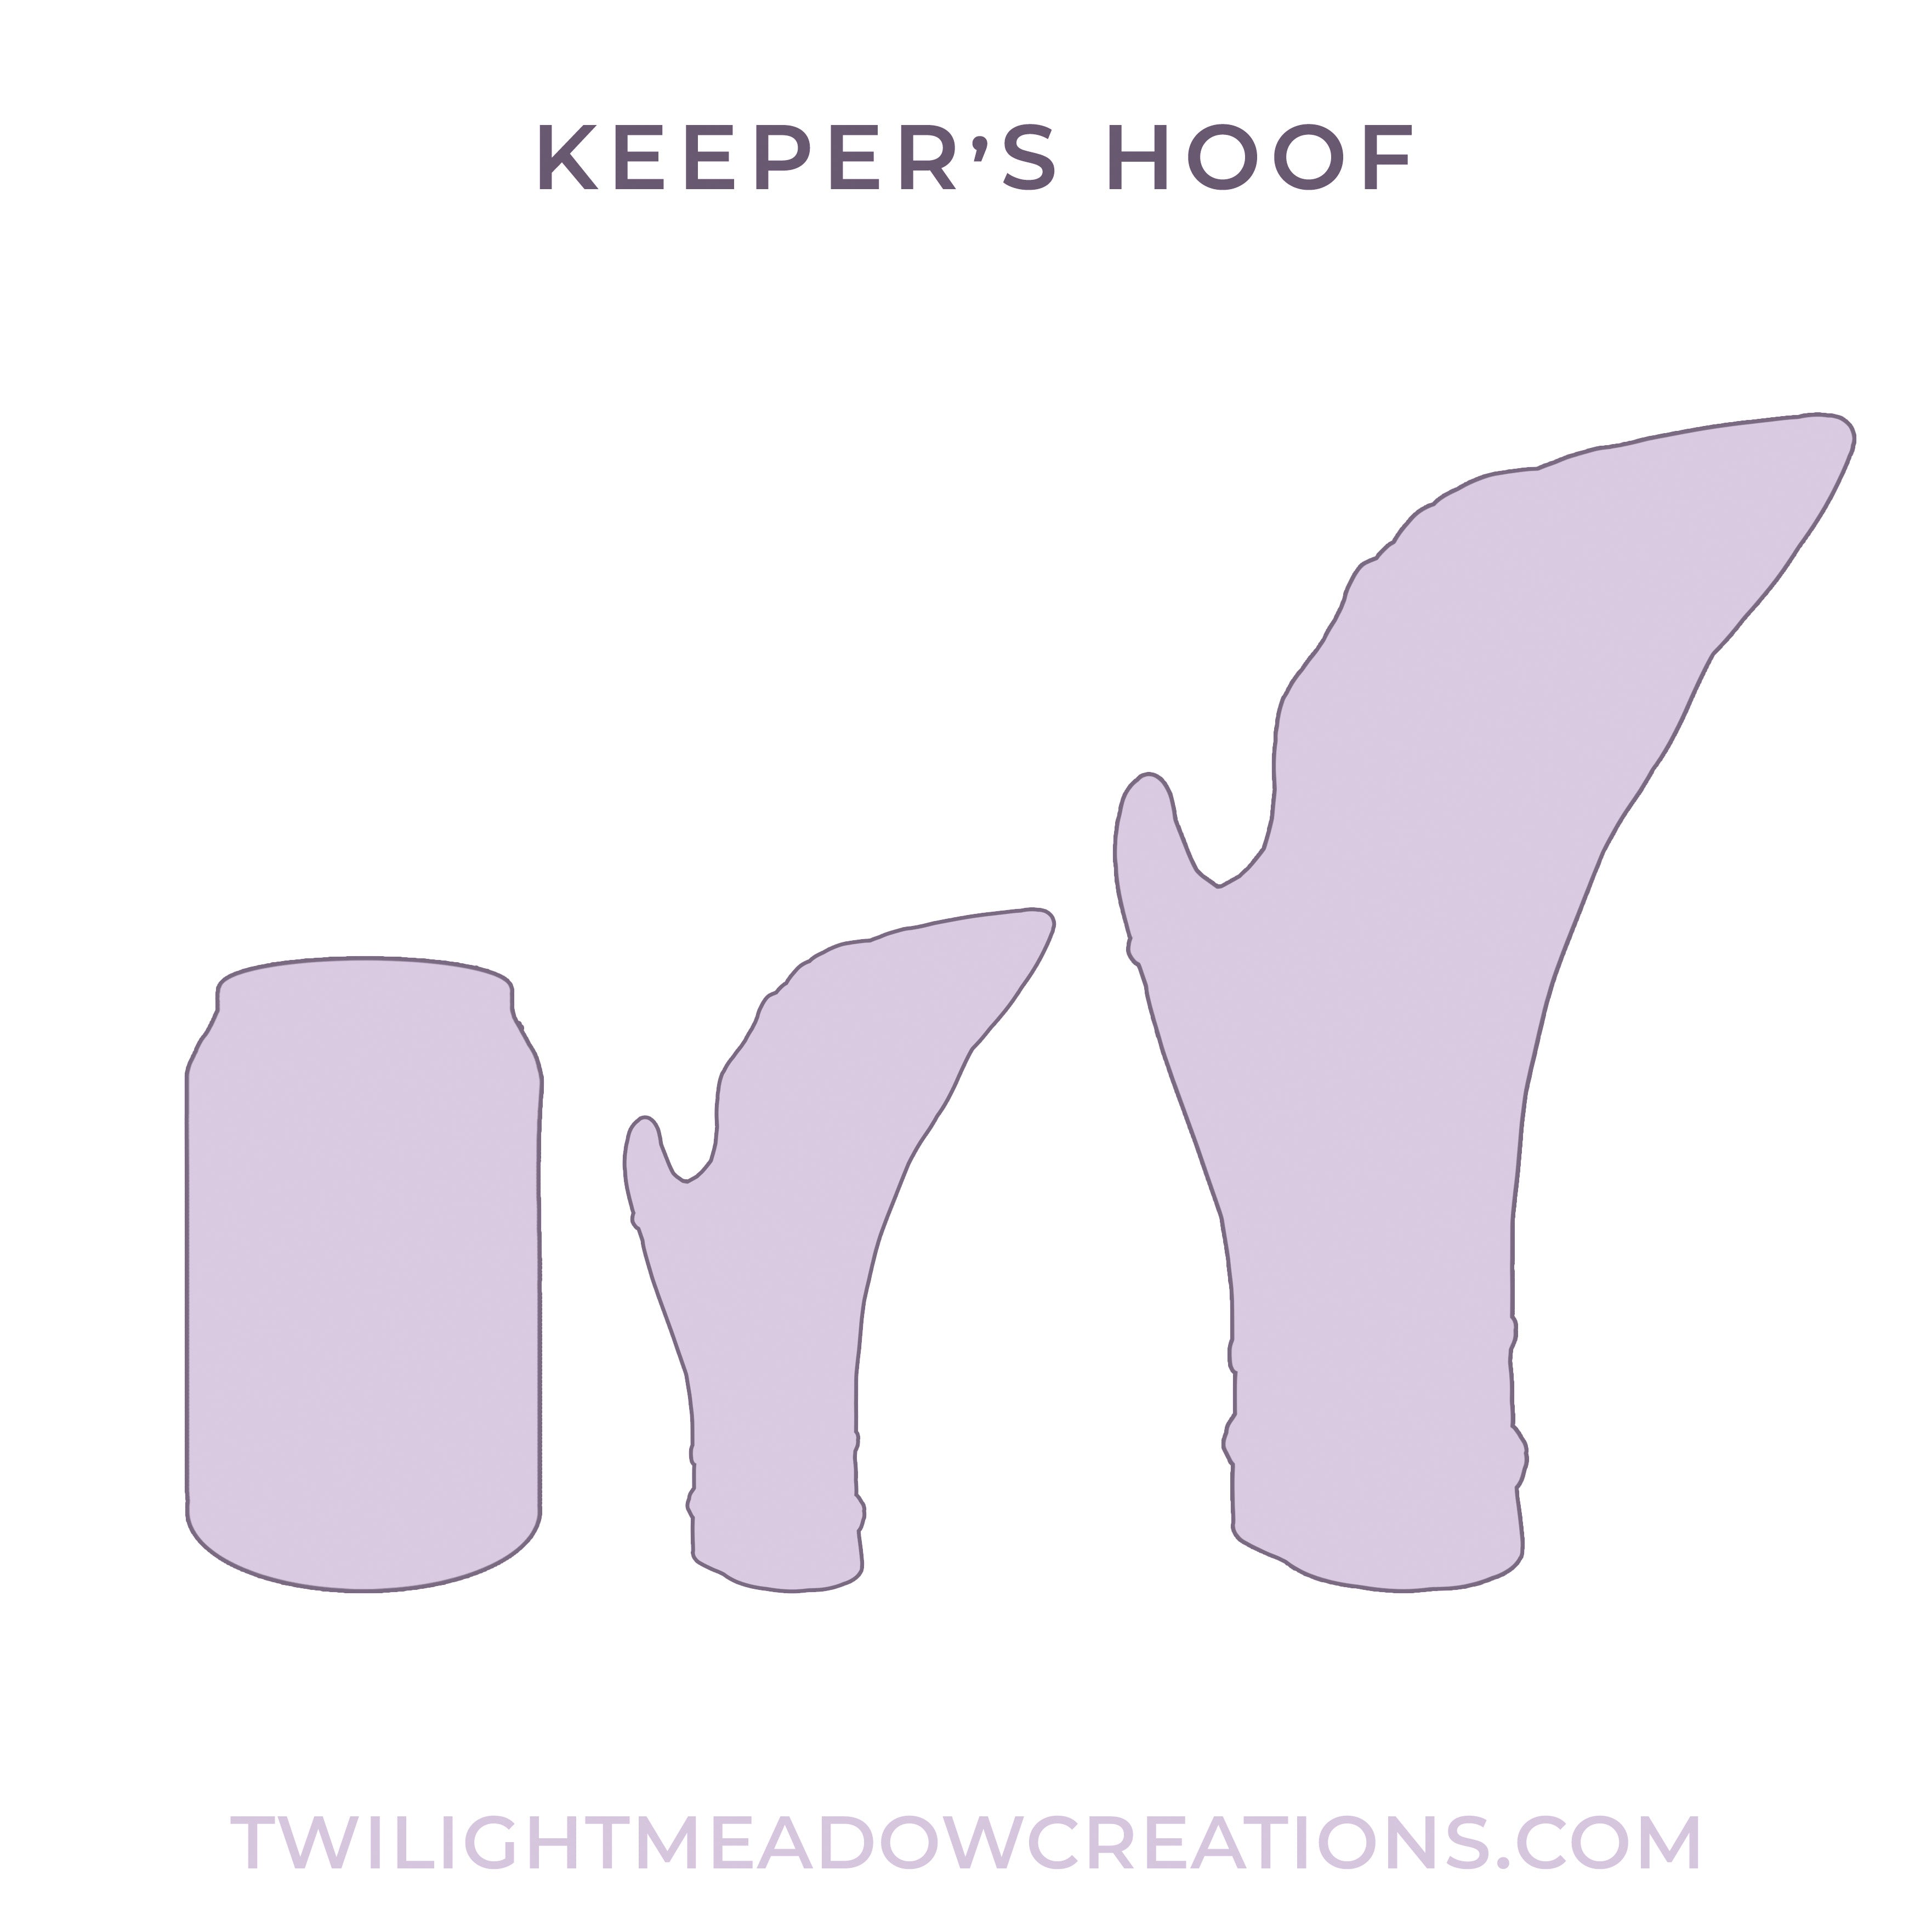 Small Keeper's Hoof (Firmness: Soft)